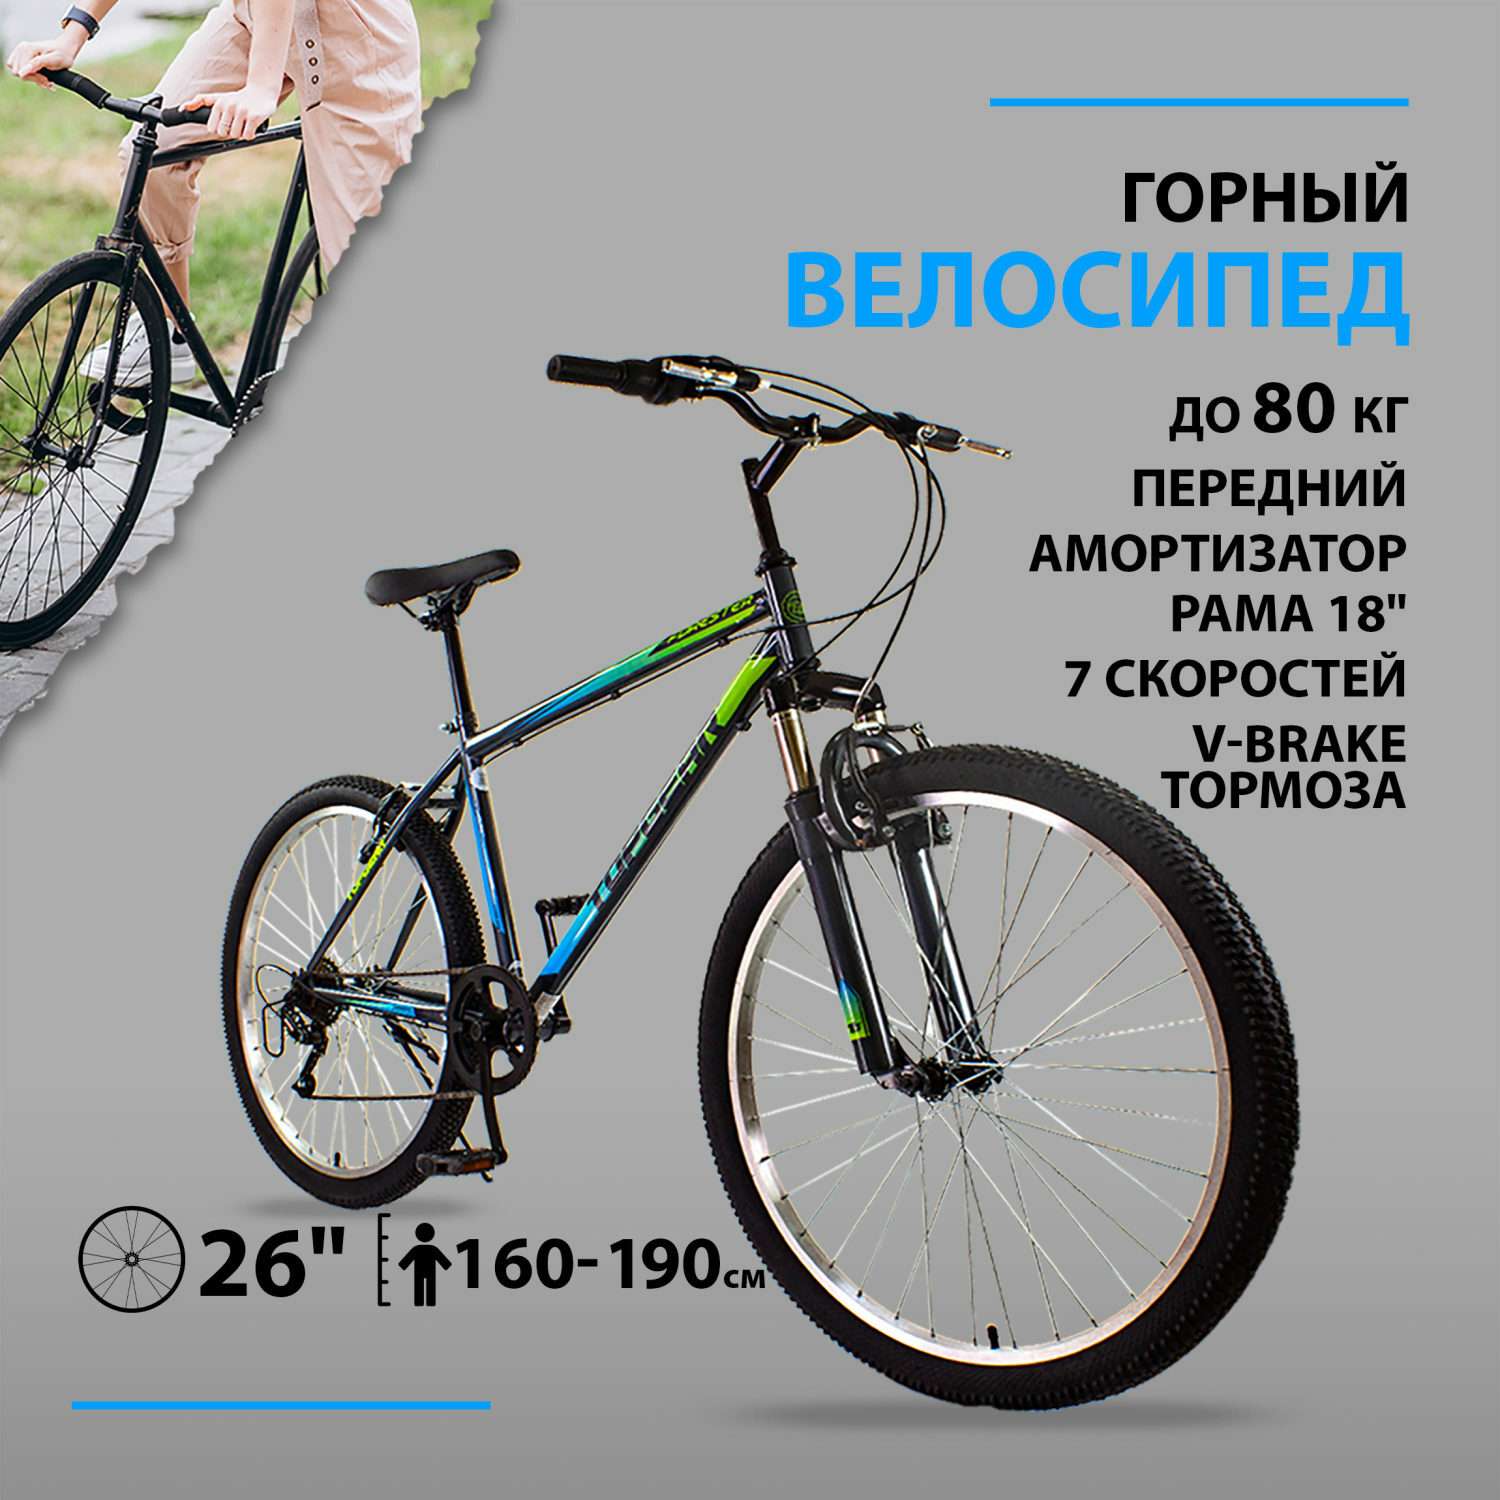 Велосипед горный TOPGEAR Forester колеса 26 - фото 1